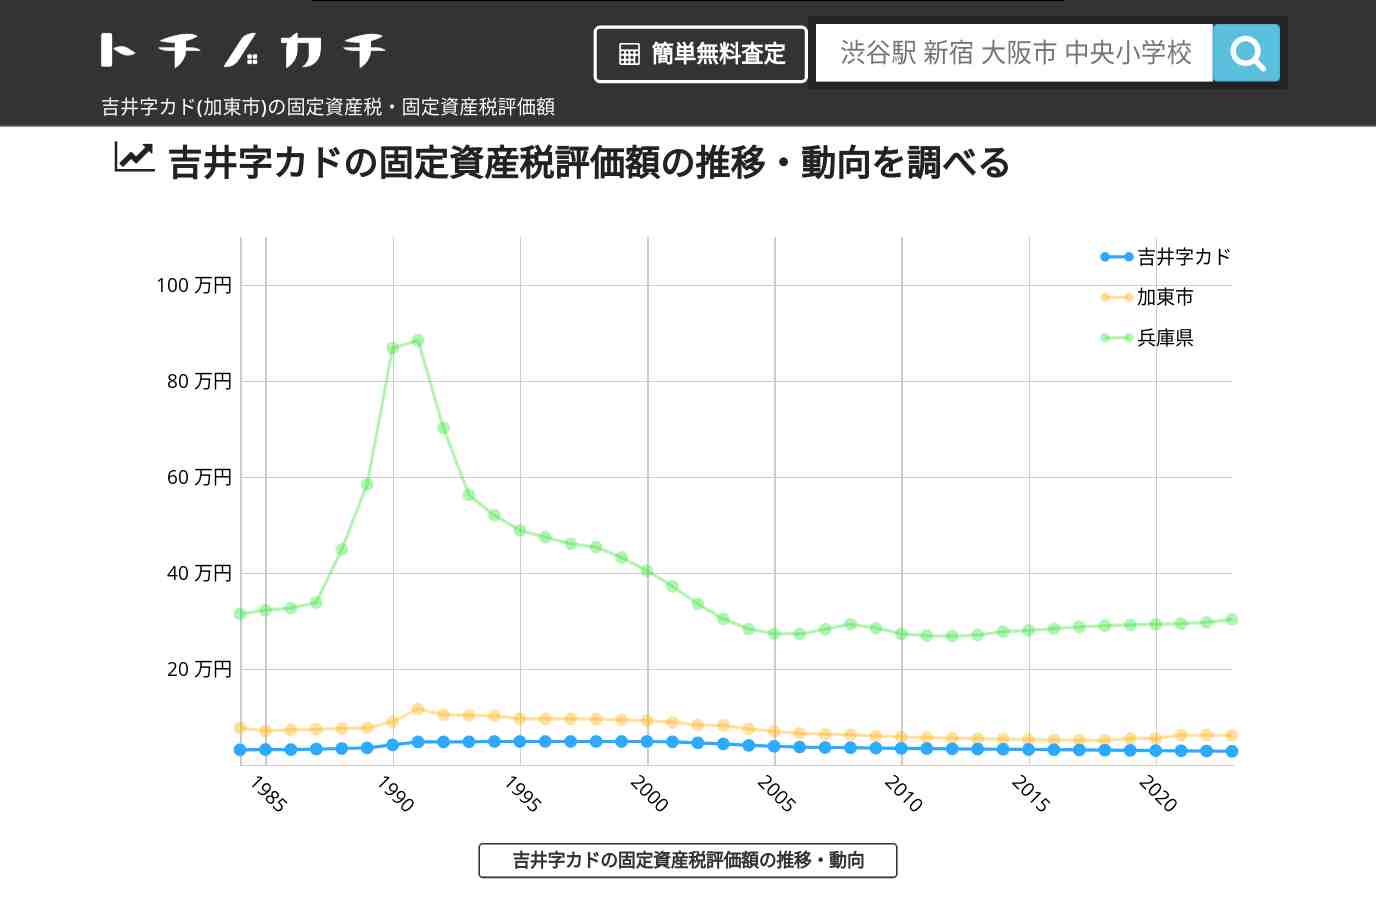 吉井字カド(加東市)の固定資産税・固定資産税評価額 | トチノカチ